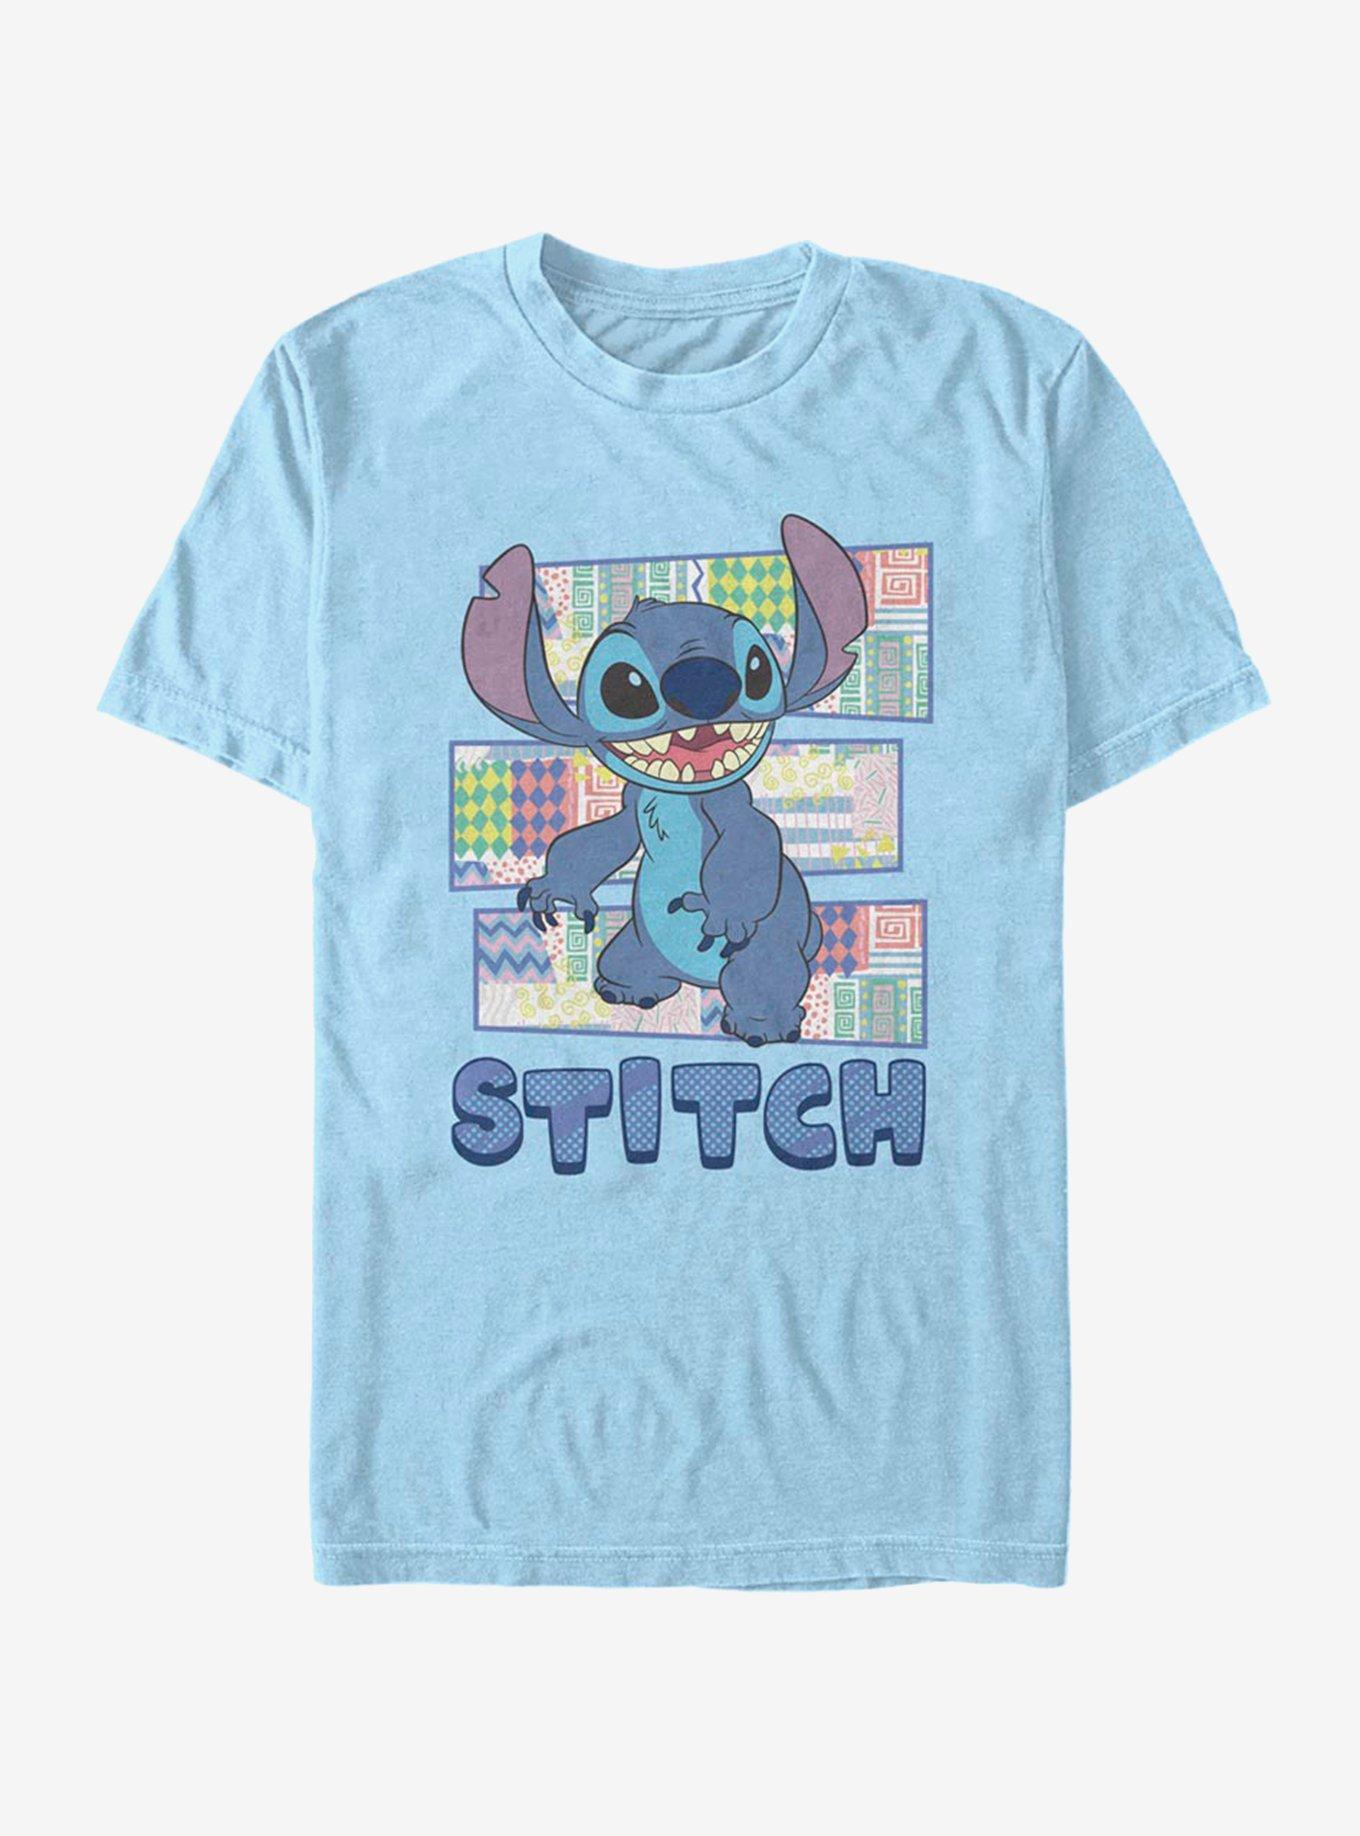 Disney Lilo & Stitch Character Shirt With Pattern T-Shirt